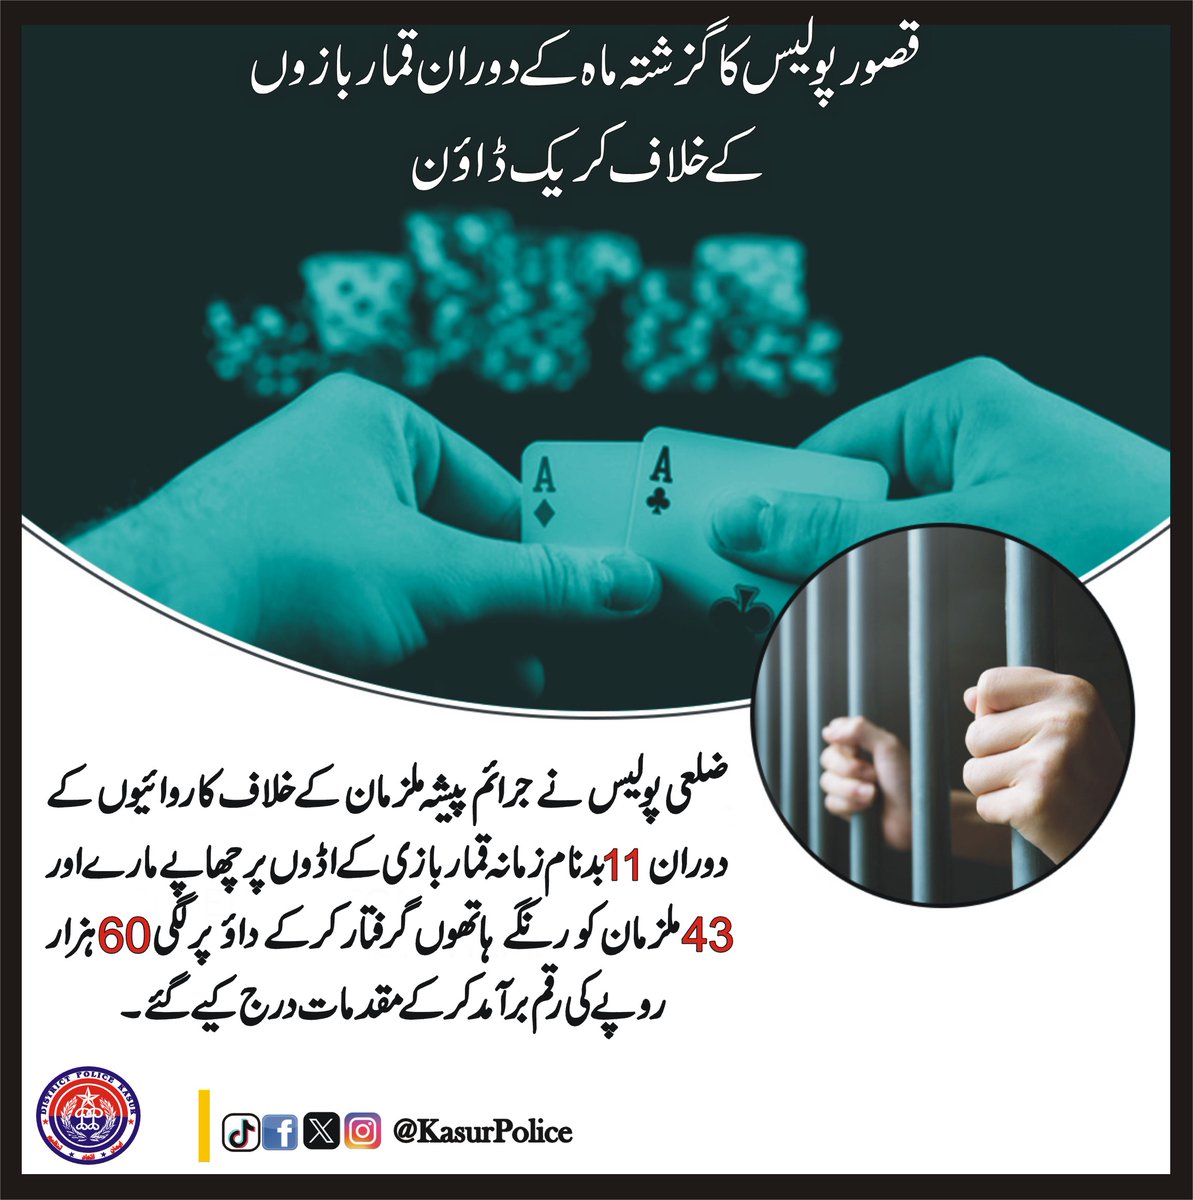 قصور پولیس کا گزشتہ ماہ کے دوران قماربازوں کے خلاف کریک ڈاؤن
#PunjabPolice #KasurPolice #AtYourService #Awareness #CrimeFreeKasur